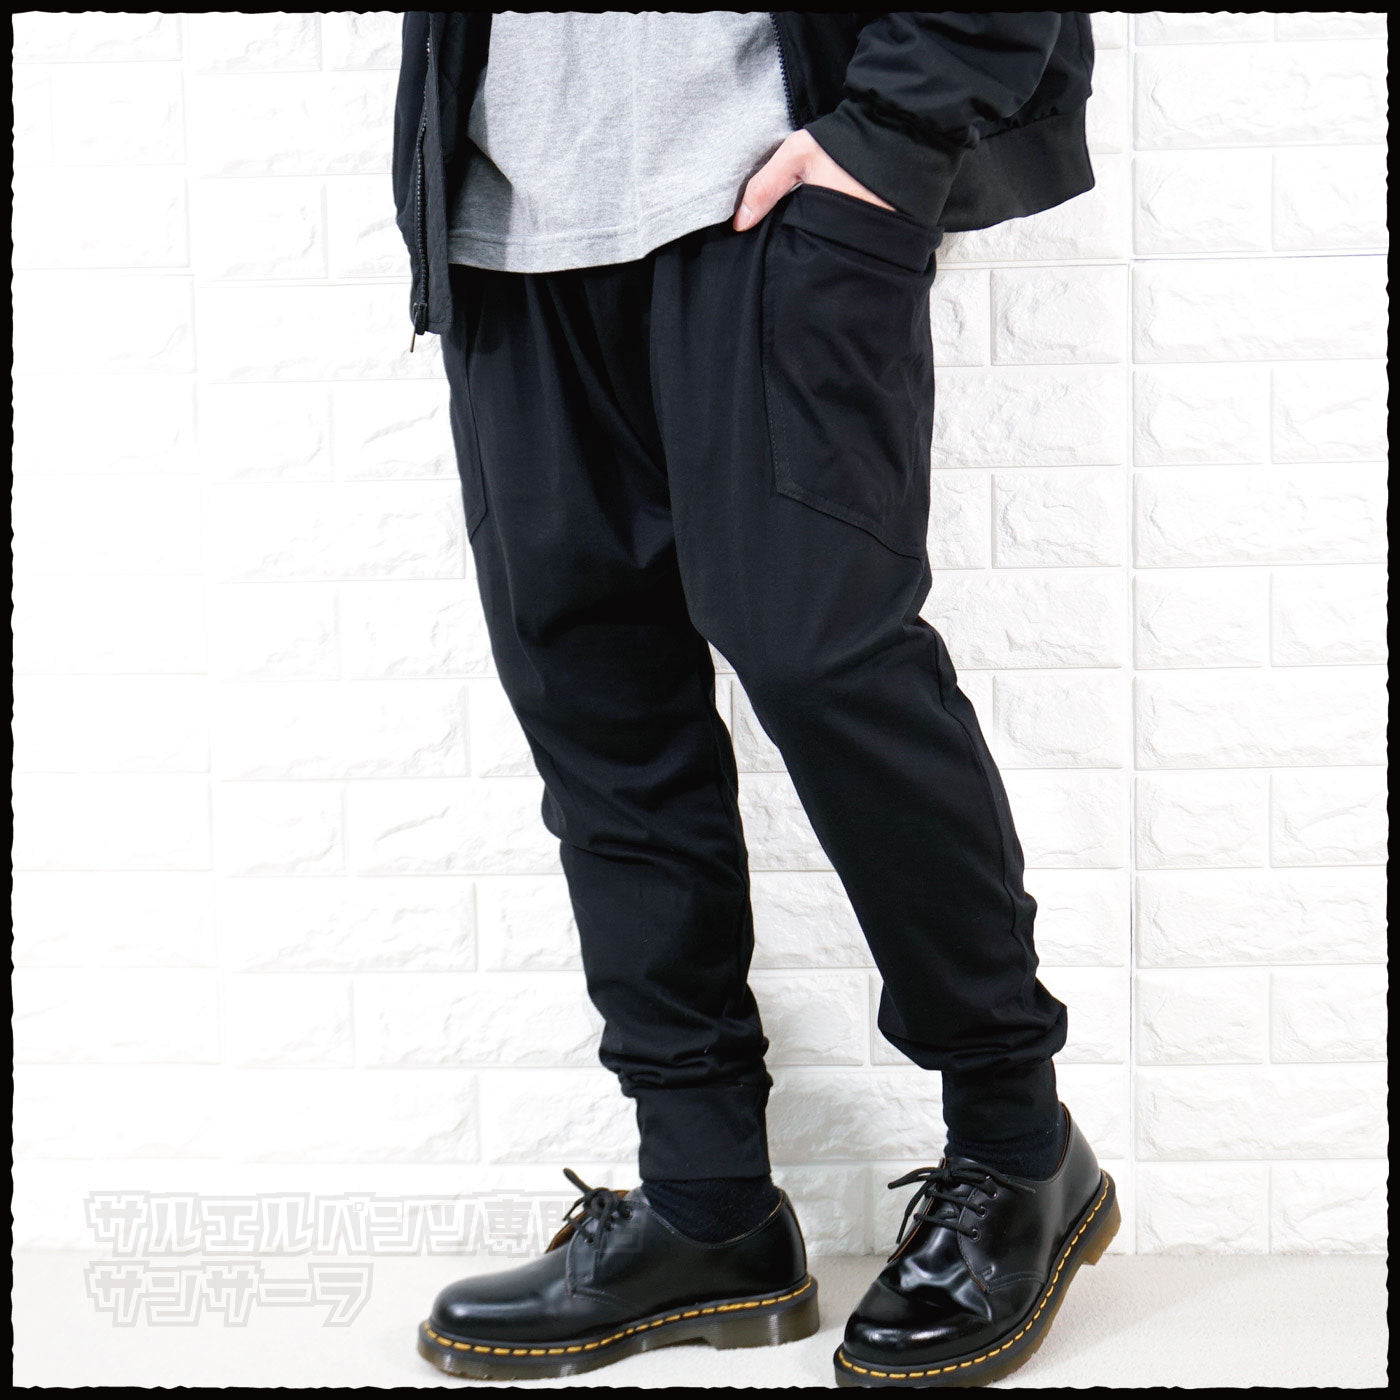 サルエルパンツ ジョガーパンツ アラジンパンツ スウェット メンズ レディース モード系 シンプル ダンス 衣装ブラック